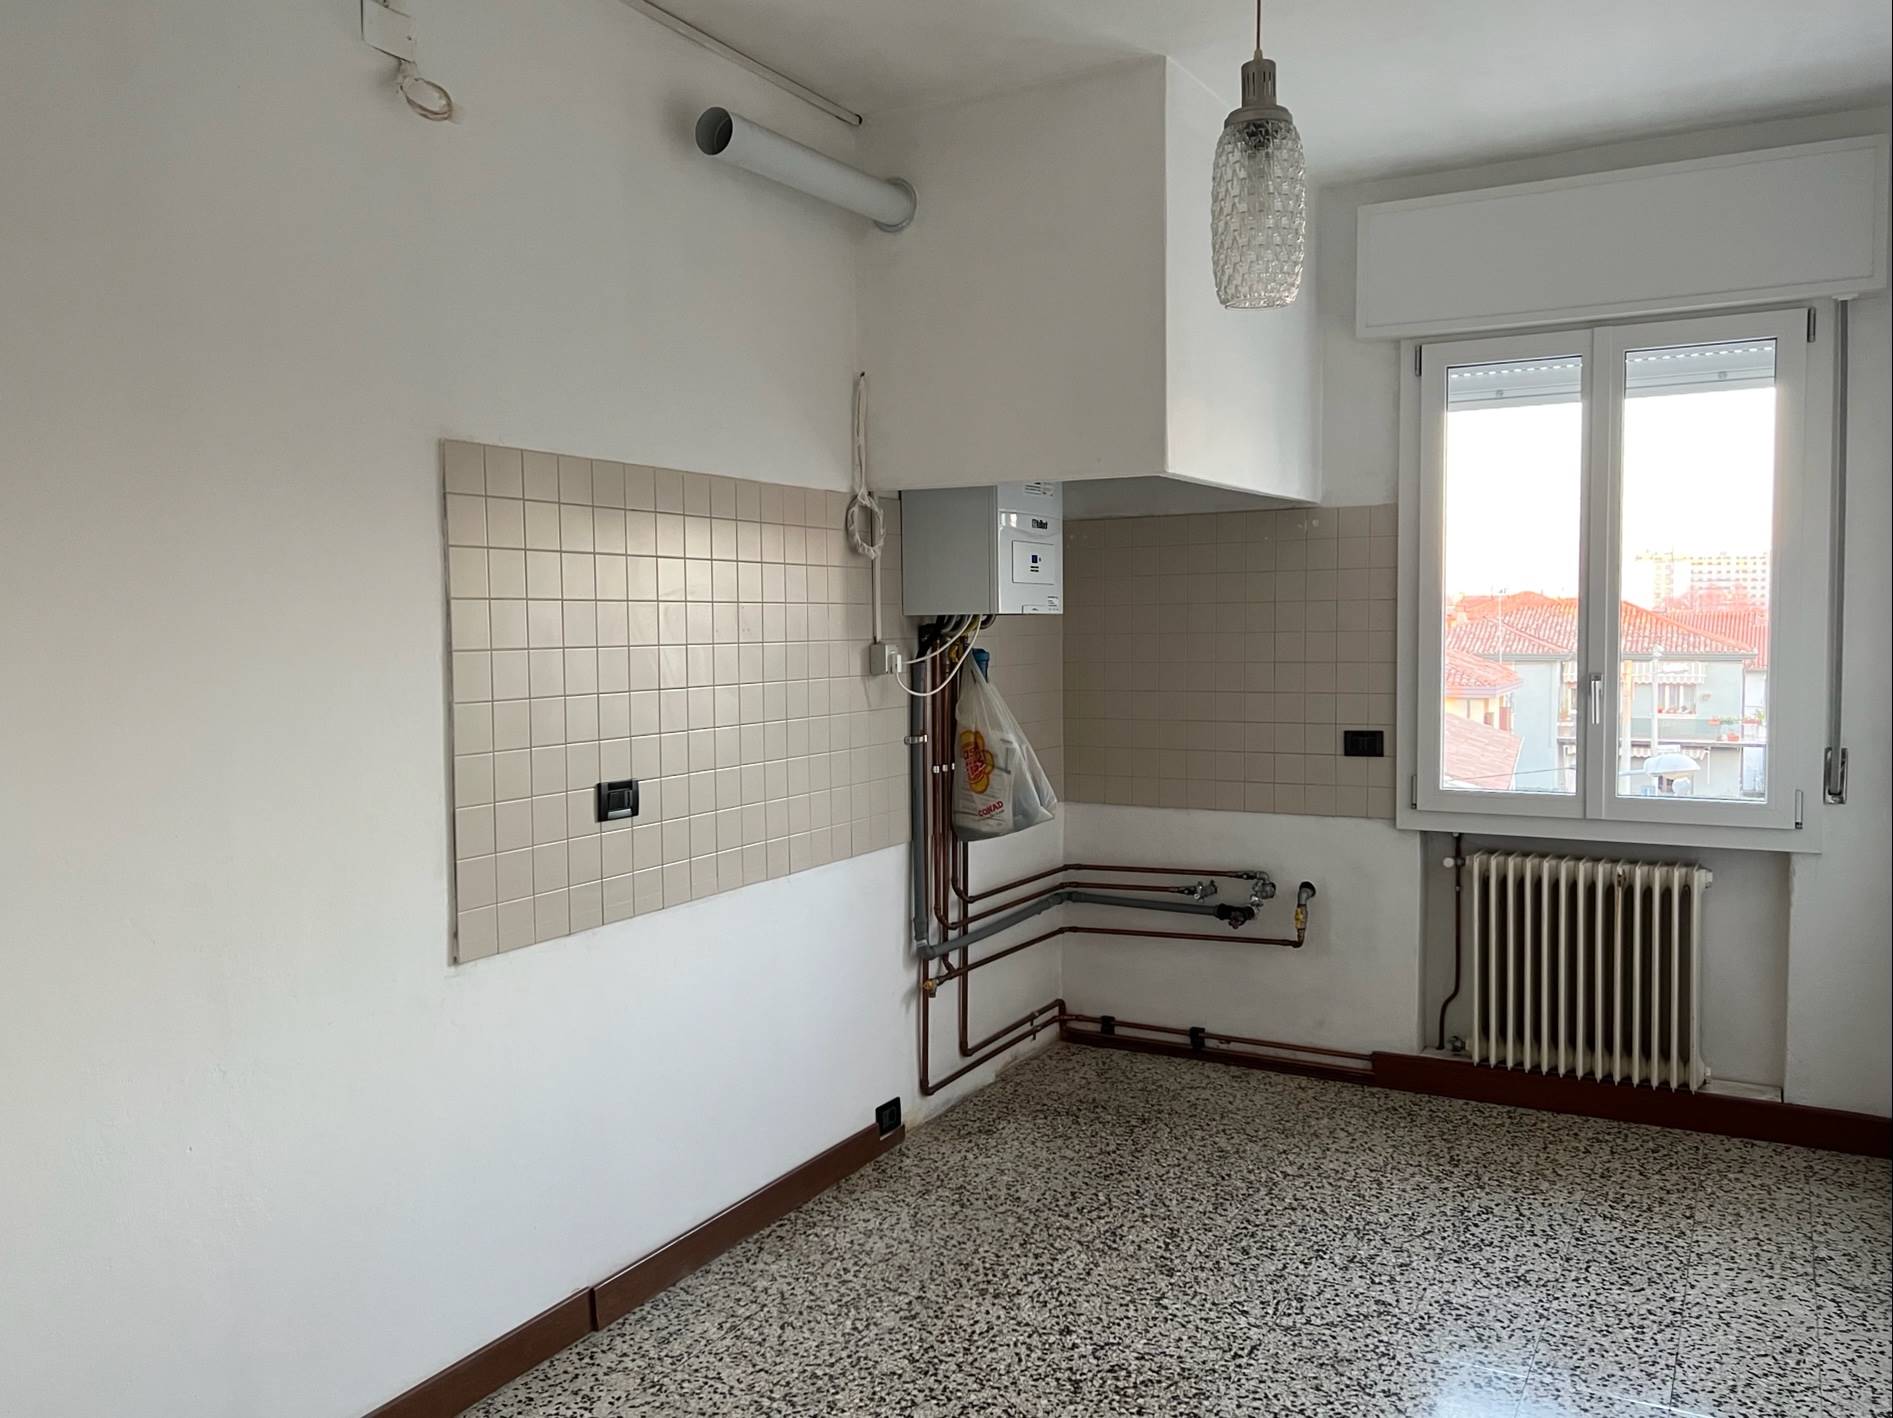 Appartamento in affitto a Venezia, 4 locali, zona Zona: 14 . Favaro Veneto, prezzo € 650 | CambioCasa.it